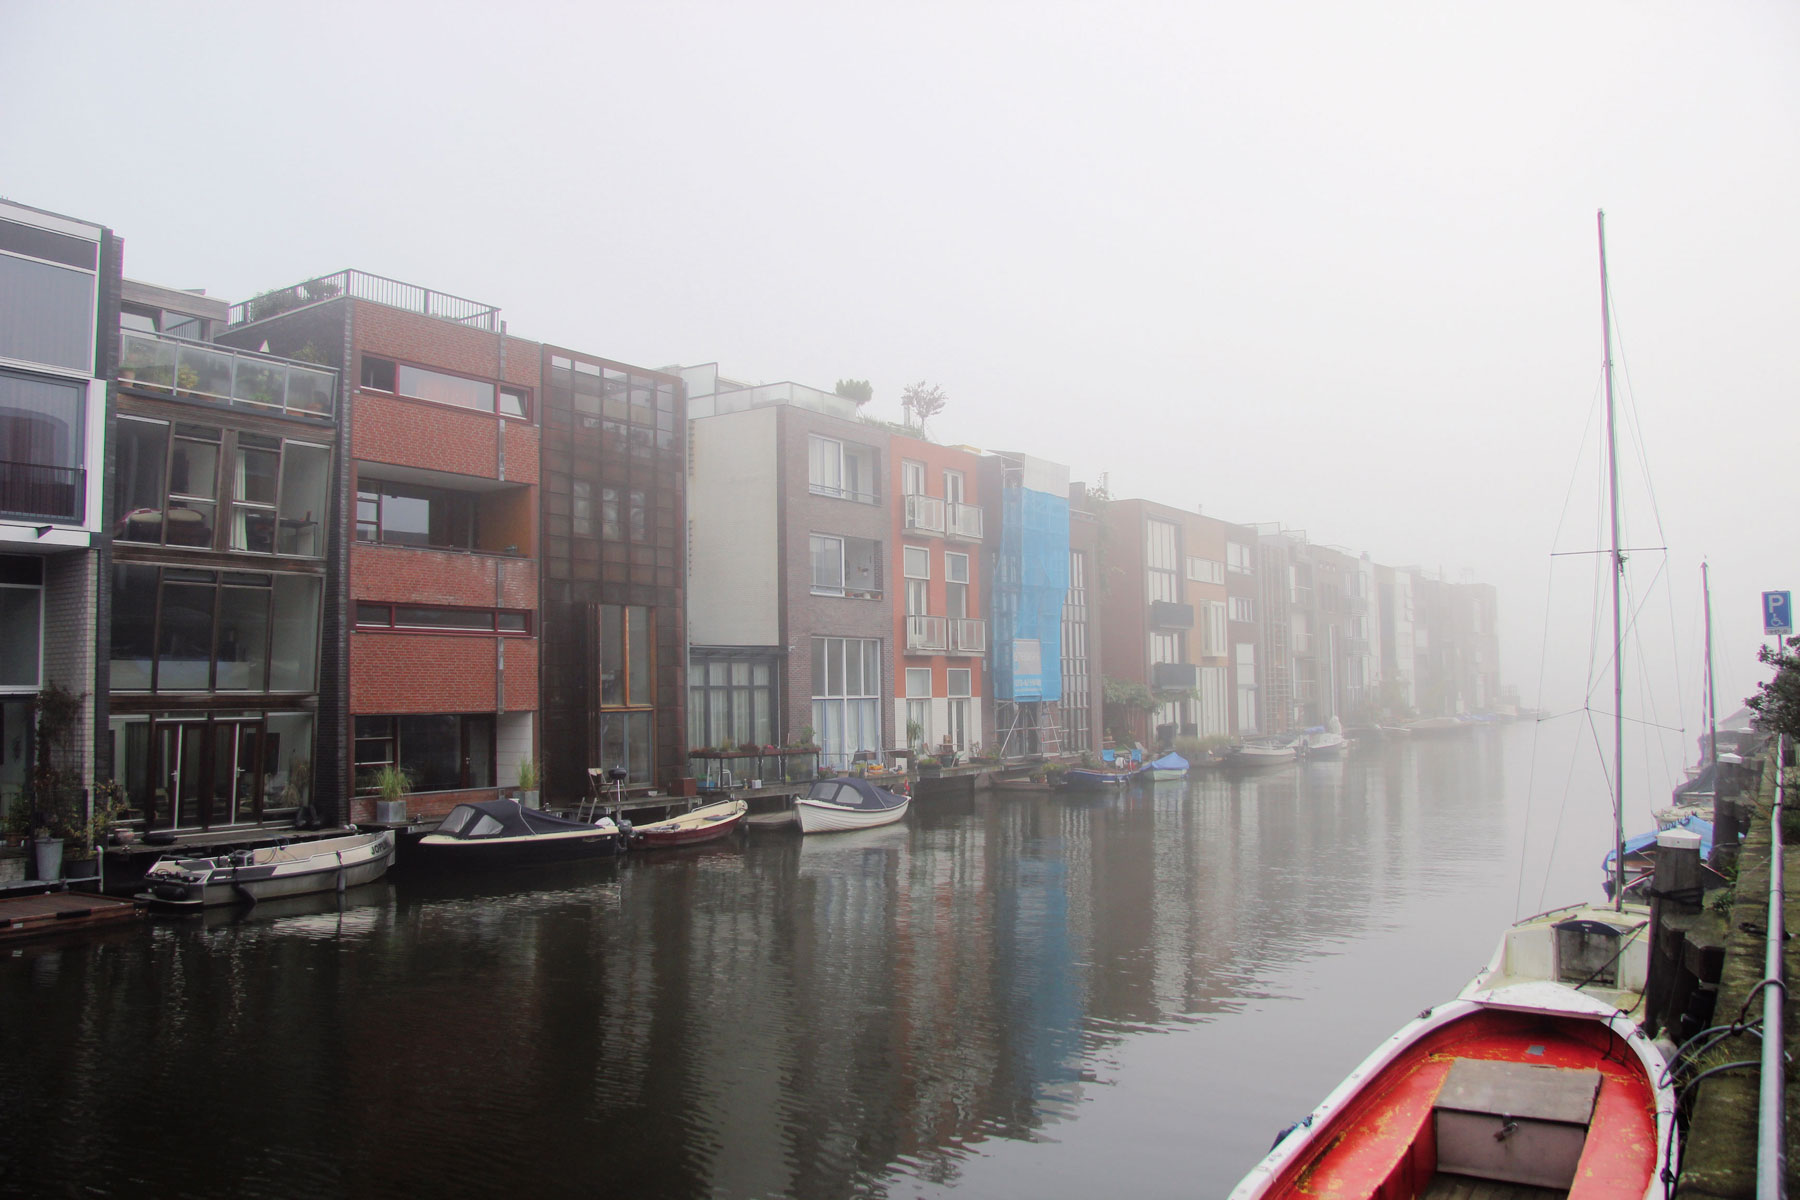 Borneo Sporenburg Sprievodný výklad slovenskej architektky žijúcej v Amsterdame Tatiany Buijs-Vítkovej odhaľuje zaujímavé zákulisie, podnety, výhody a aj nevýhody vzniku a fungovania takéhoto špecifického bývania. Radová zástavba na vode má prísne zastavovacie pravidlá, no voľné architektonické stvárnenie. Celkom zjavne sa potvrdzuje, že regulatívy podnecujú inšpiráciu. Foto: Rea Dilhoffová